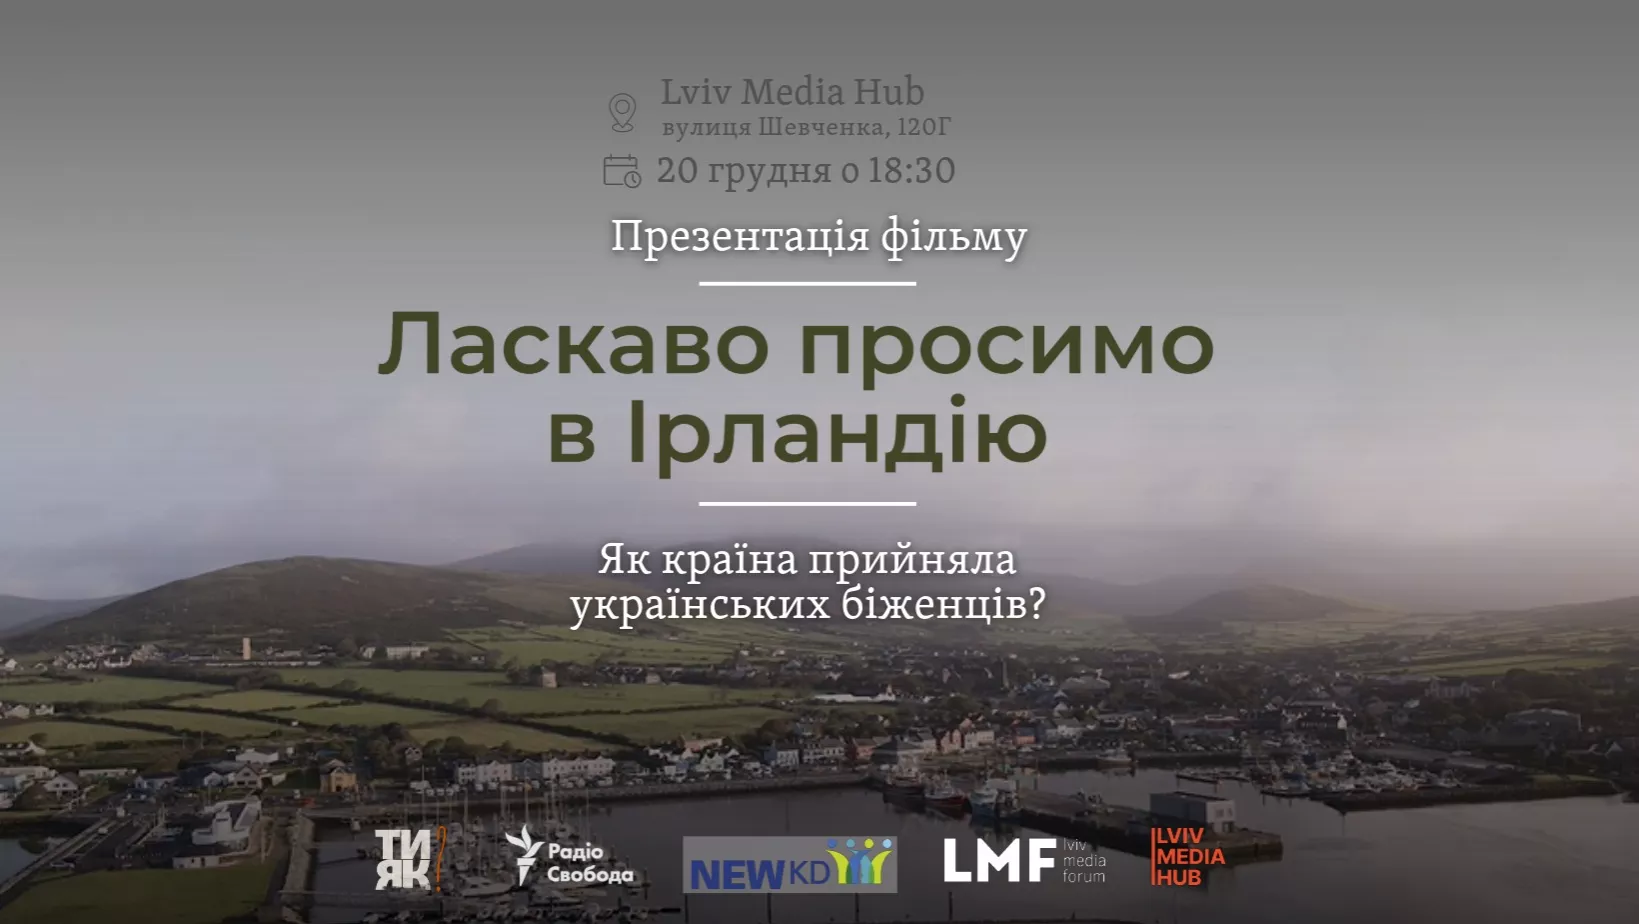 20 грудня — показ документального фільму про життя українських біженців «Ласкаво просимо в Ірландію»